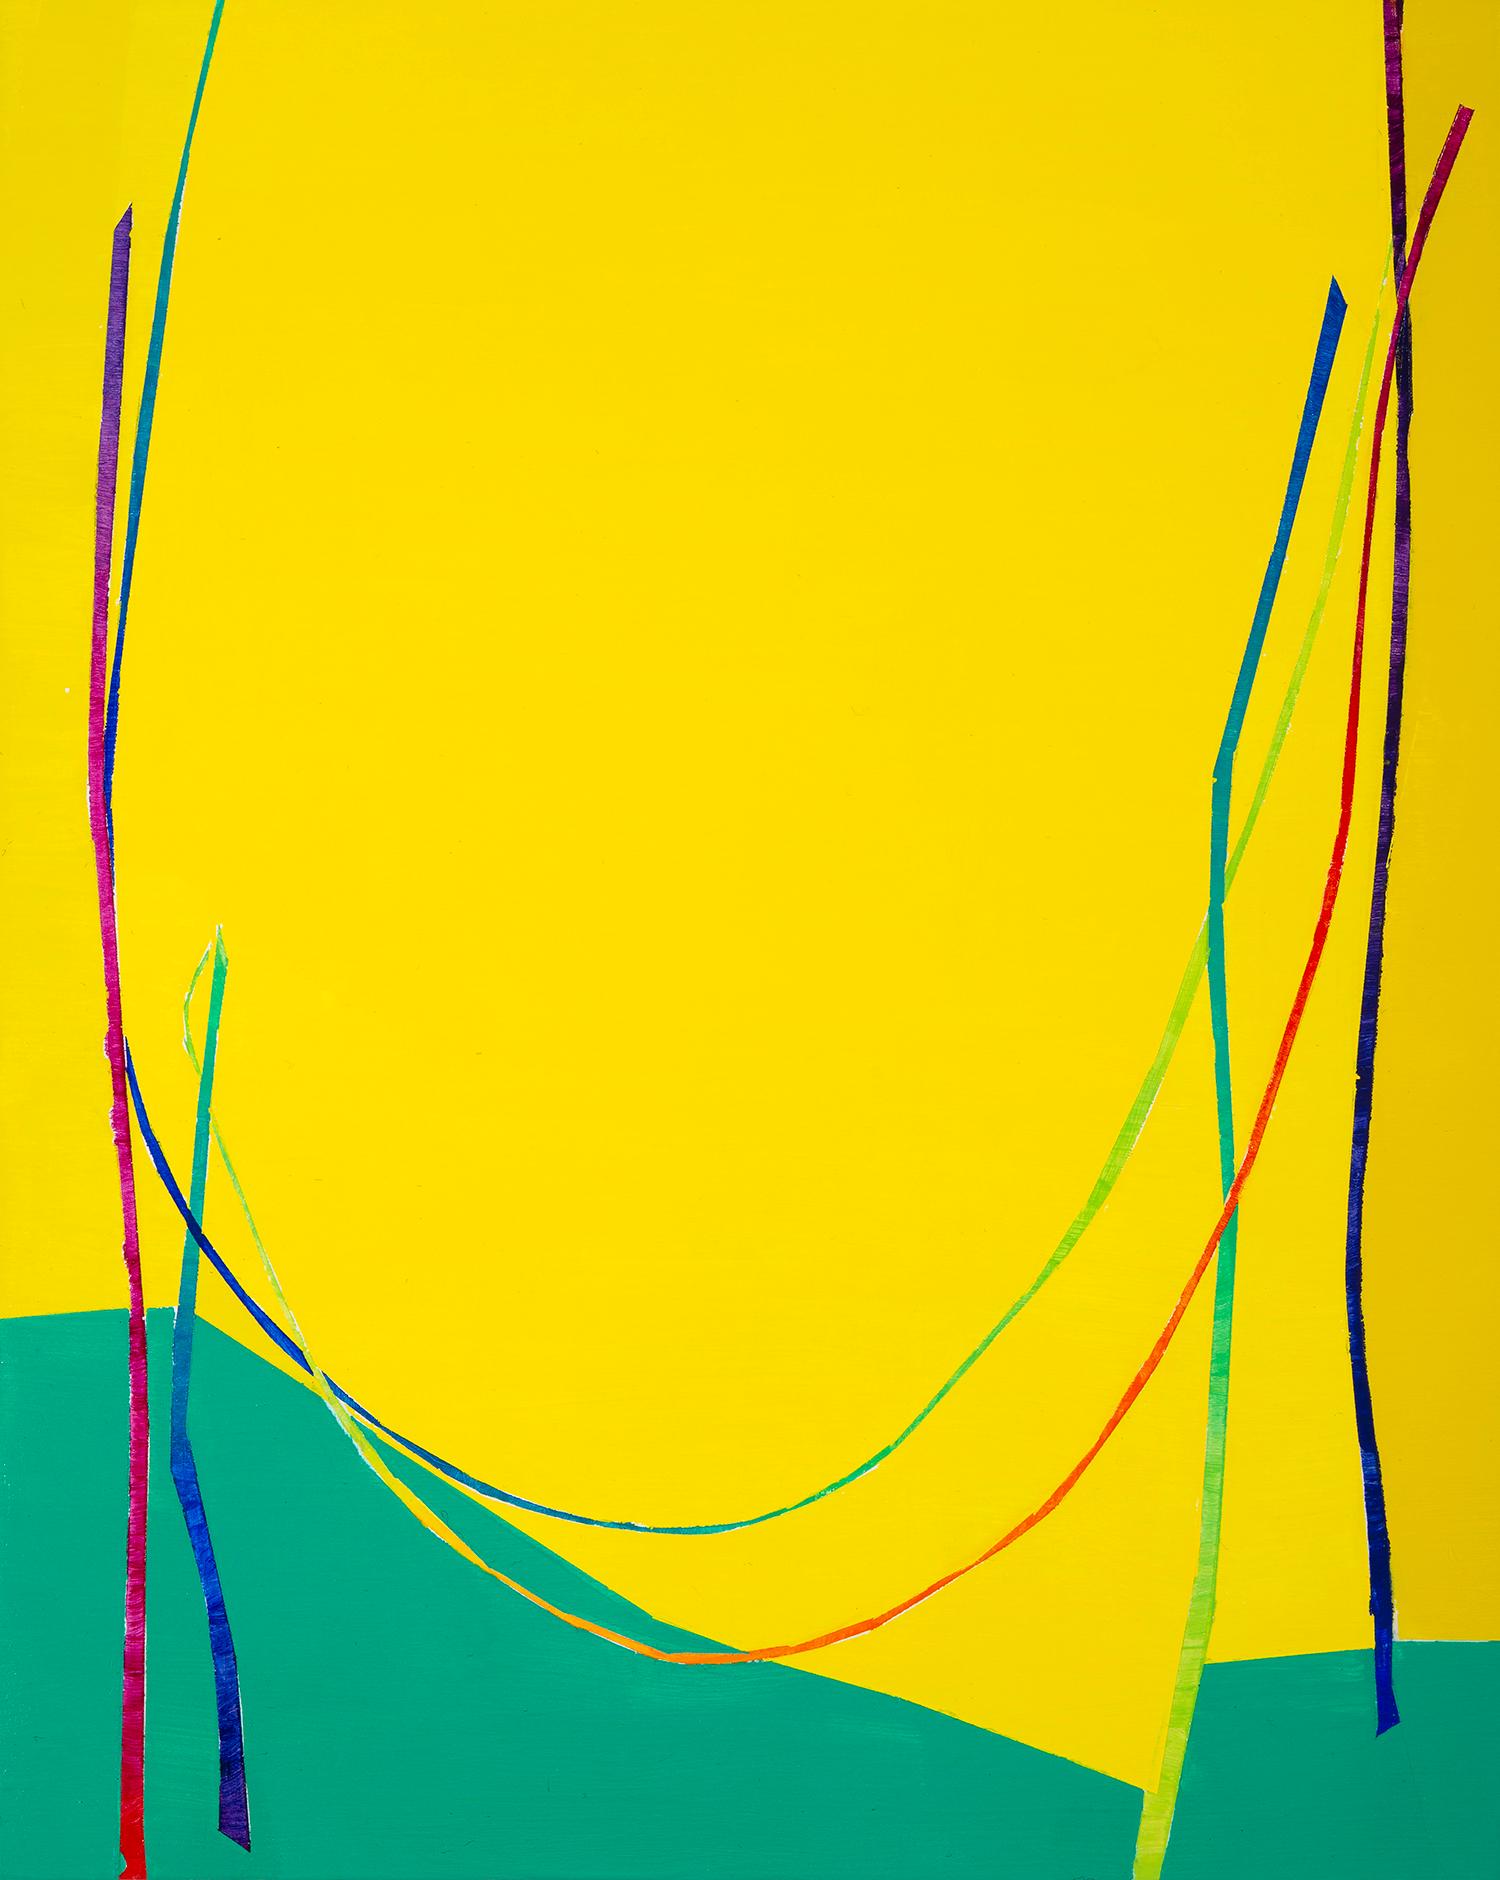 Double Catenary: Tafelbild mit mehrfarbigen Bogenlinien auf Gelb und Grün